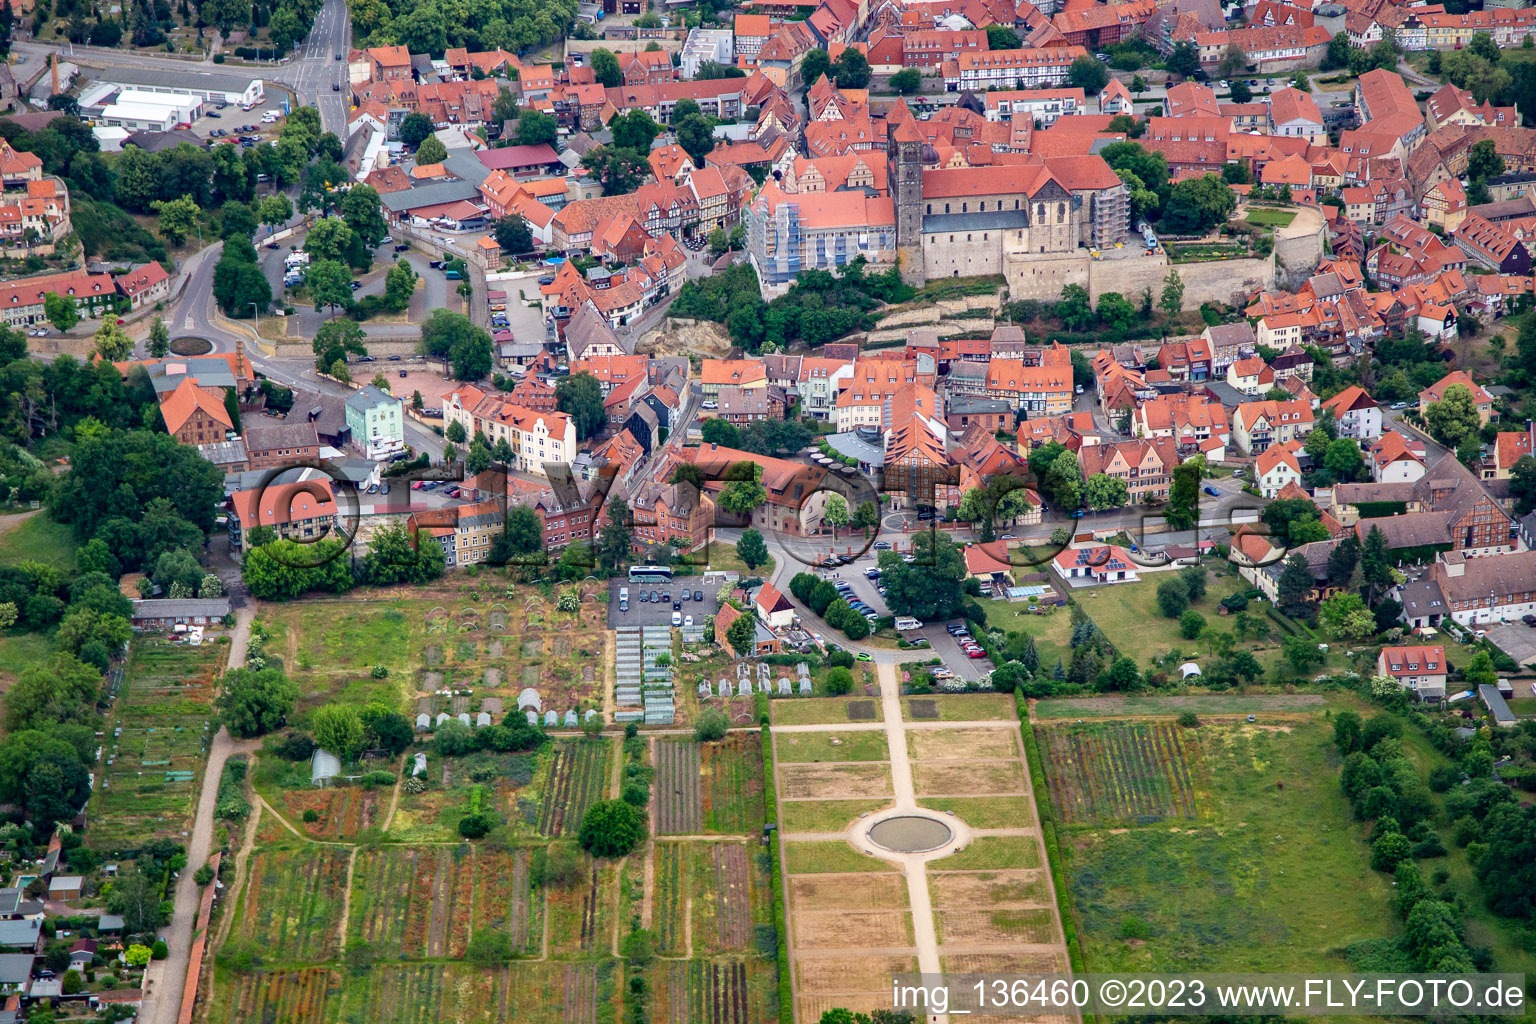 Photographie aérienne de Collégiale Saint-Servatii à Quedlinburg dans le département Saxe-Anhalt, Allemagne